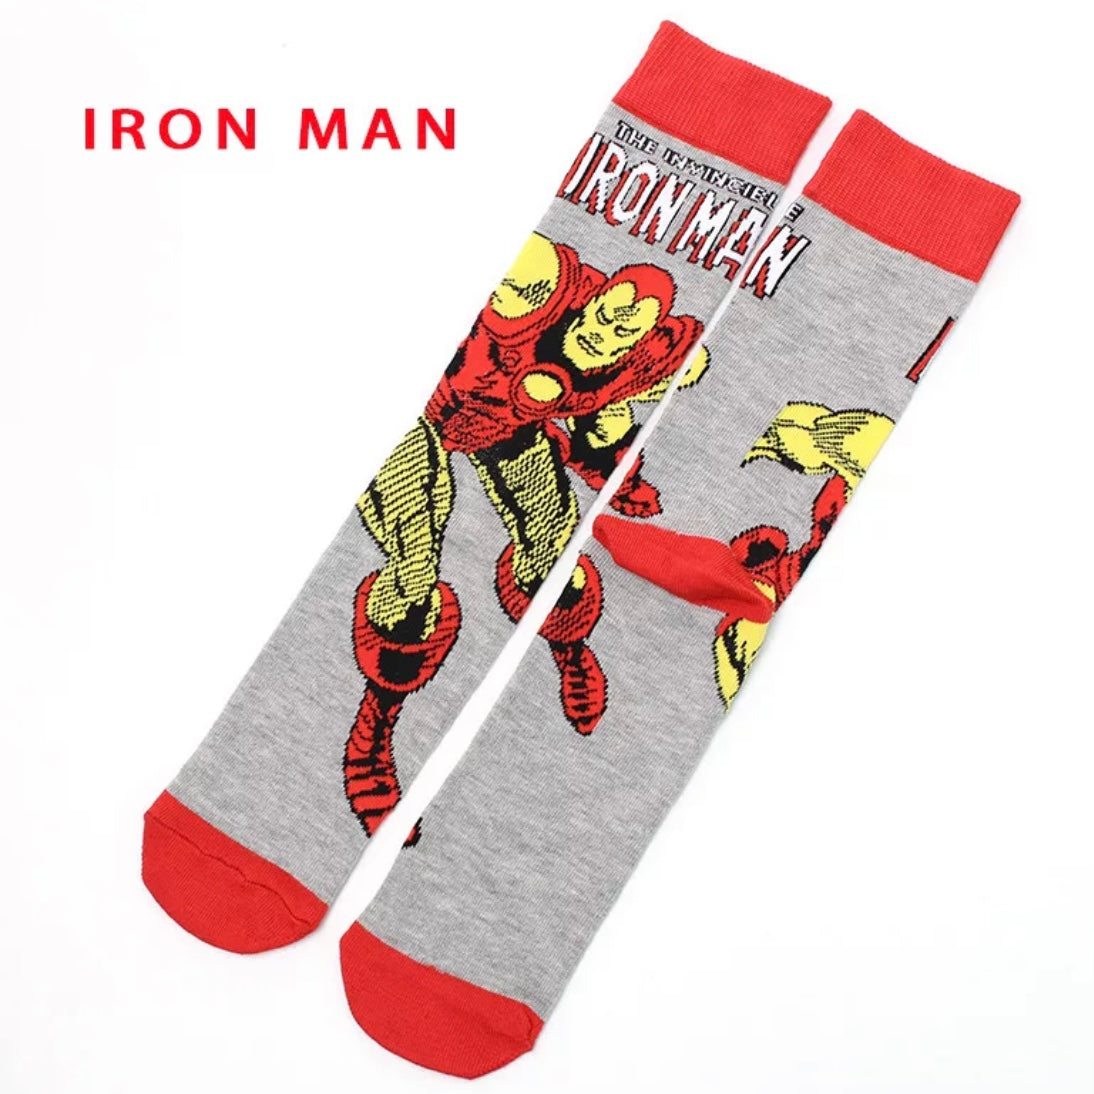 Iron Man Socks